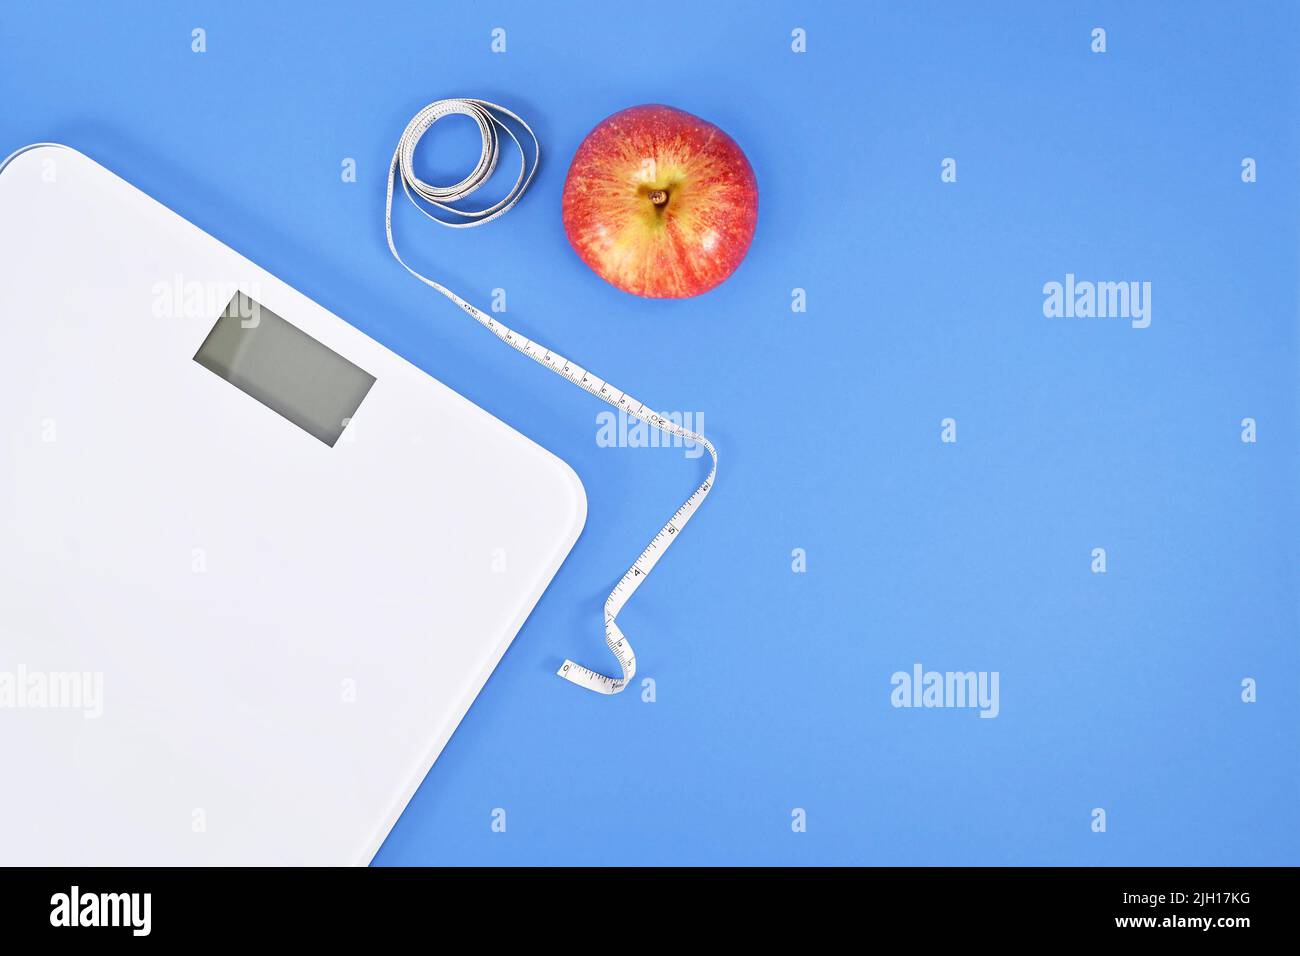 Concetto di dieting con scala, nastro di misurazione e mela su sfondo blu con spazio di copia Foto Stock